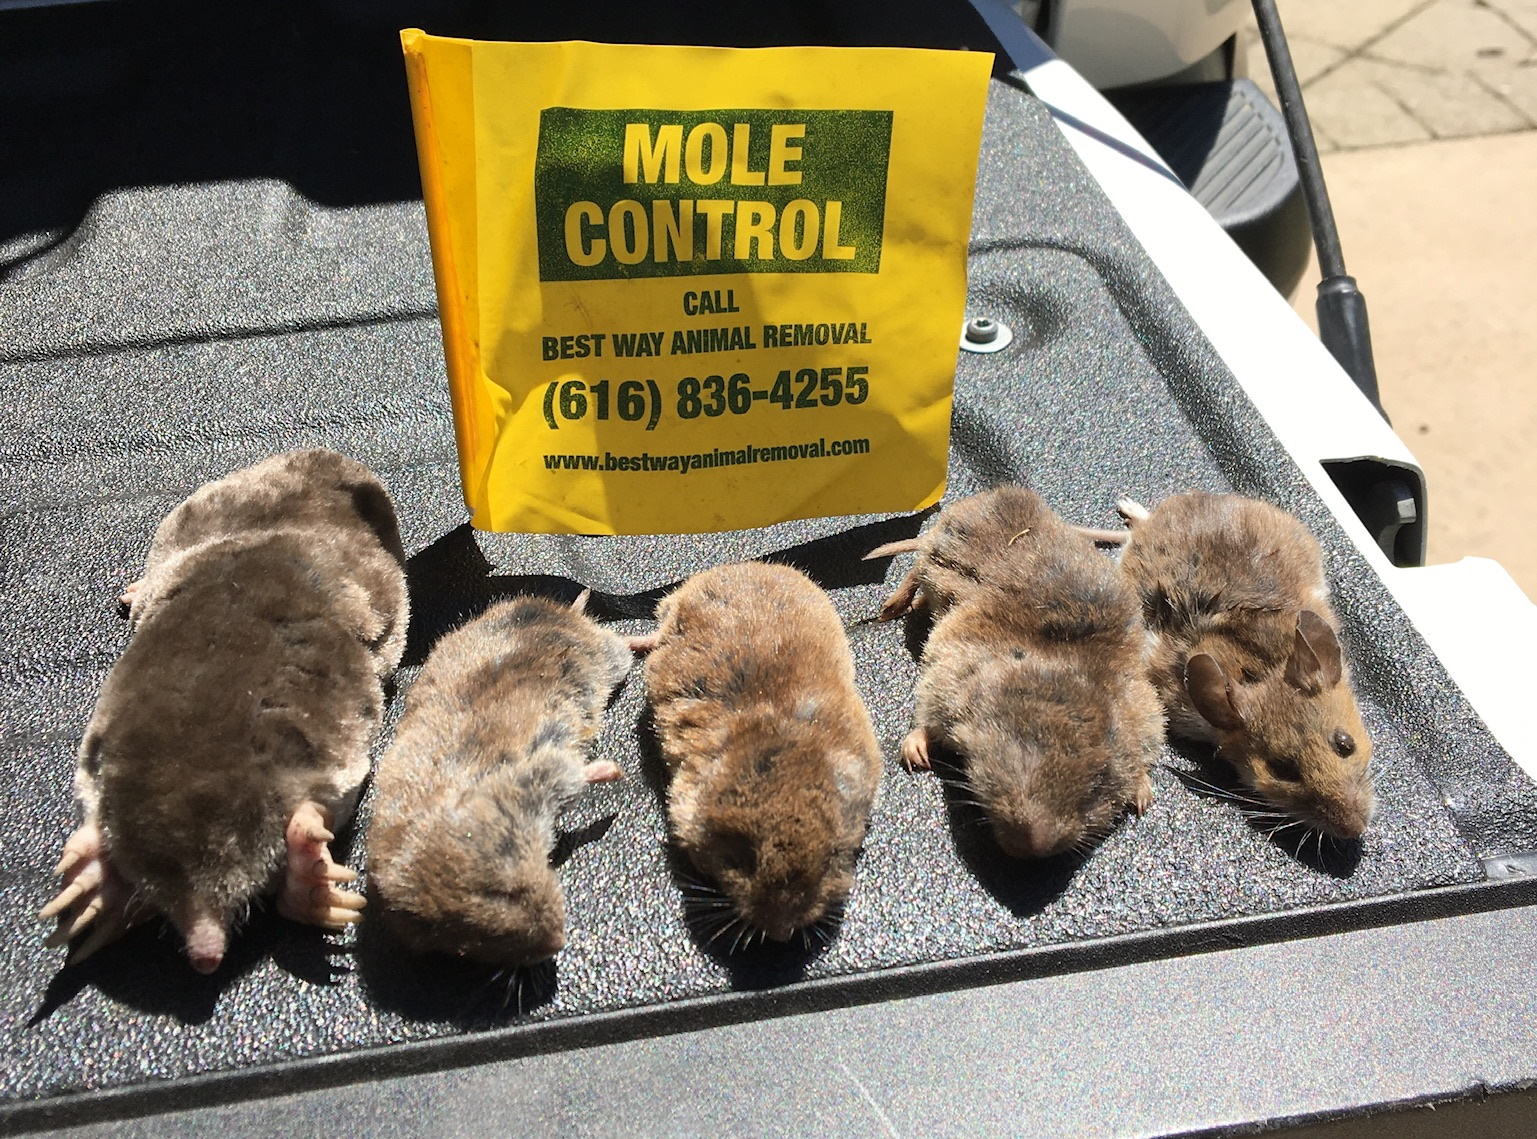 Blendon mole control services